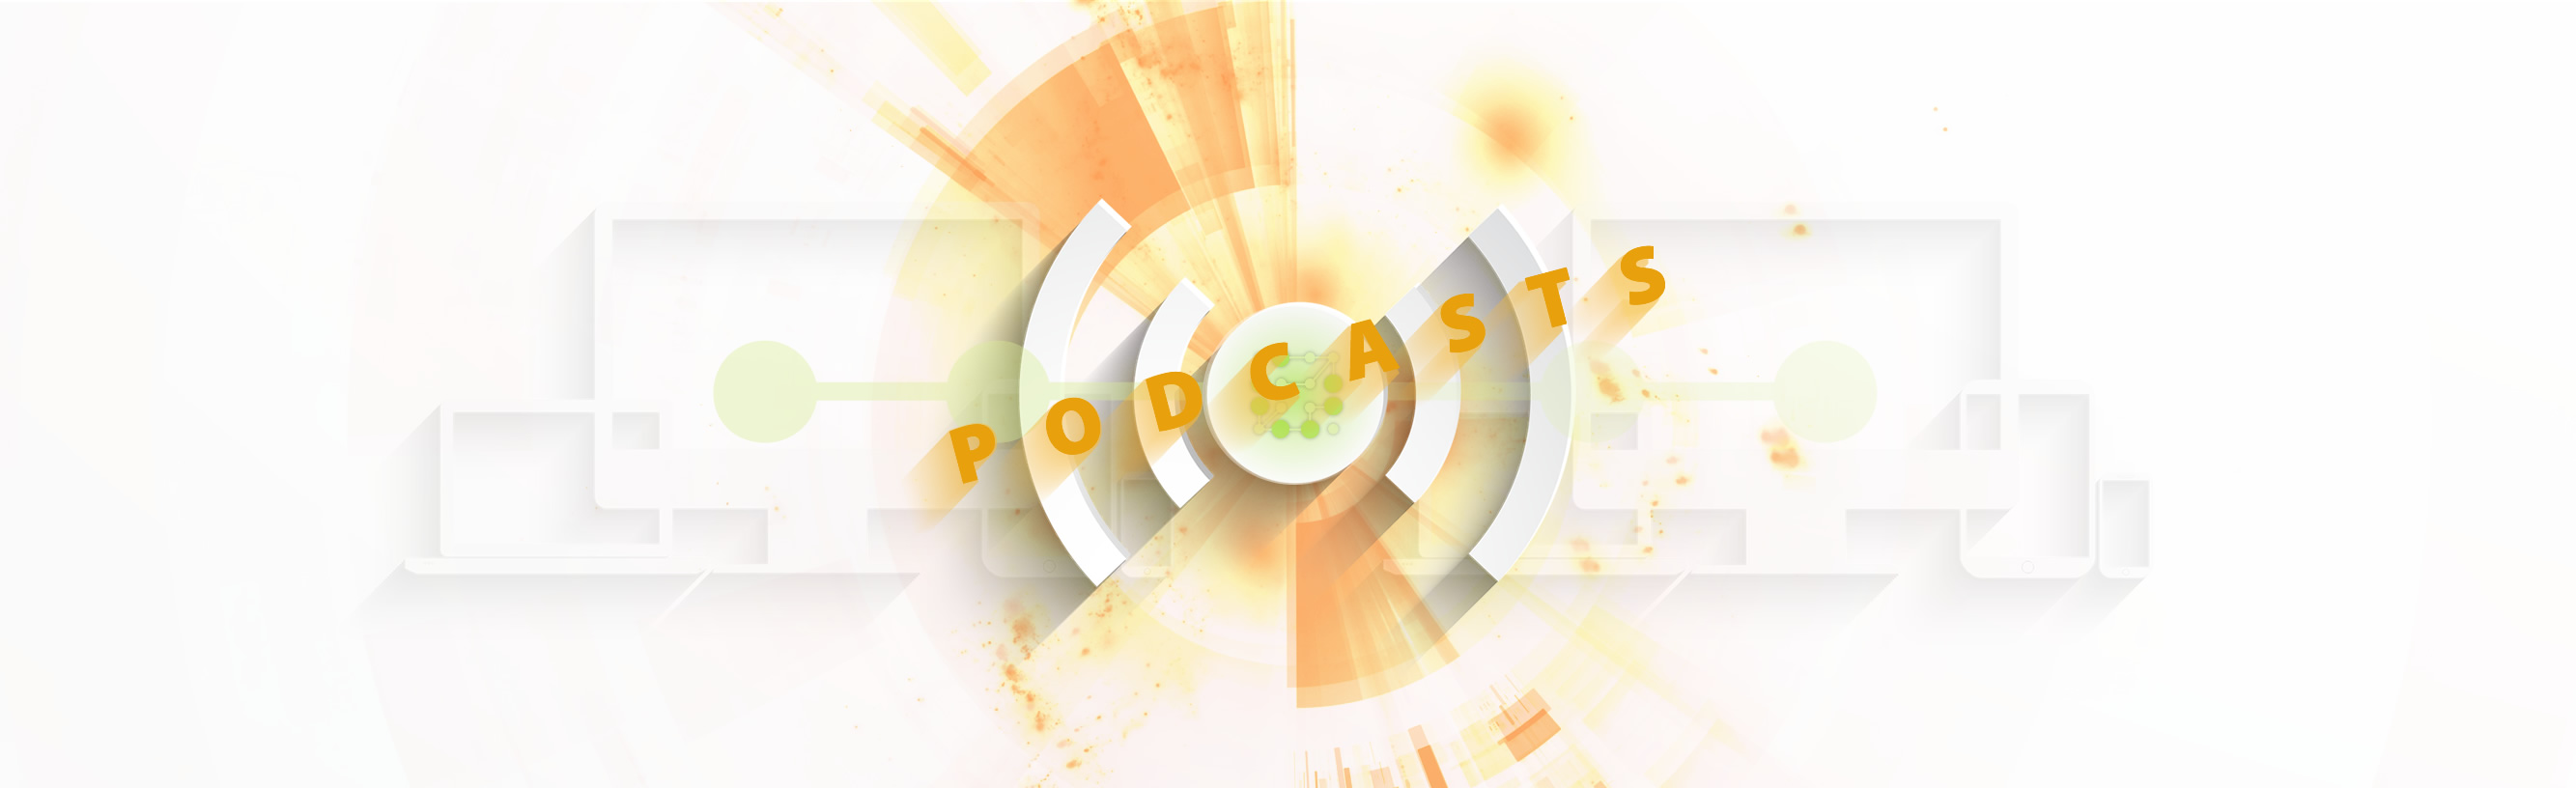 Podcasts: lo que quieras, cuando quieras, donde quieras